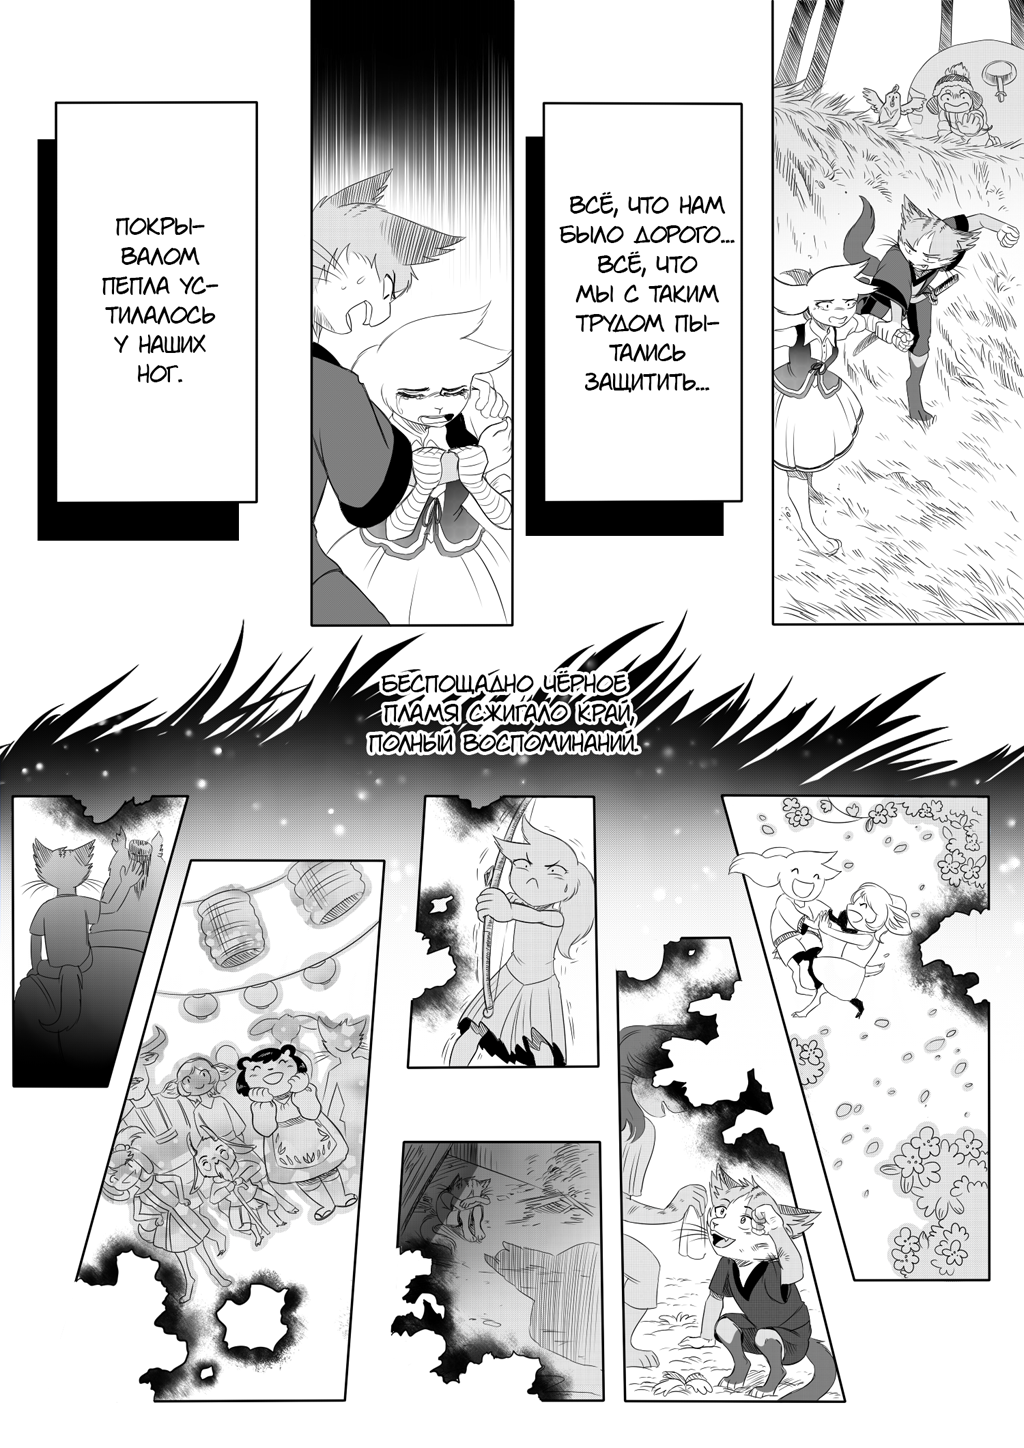 Комикс Hoshizora no densetsu [Сказание звёздного неба]: выпуск №45